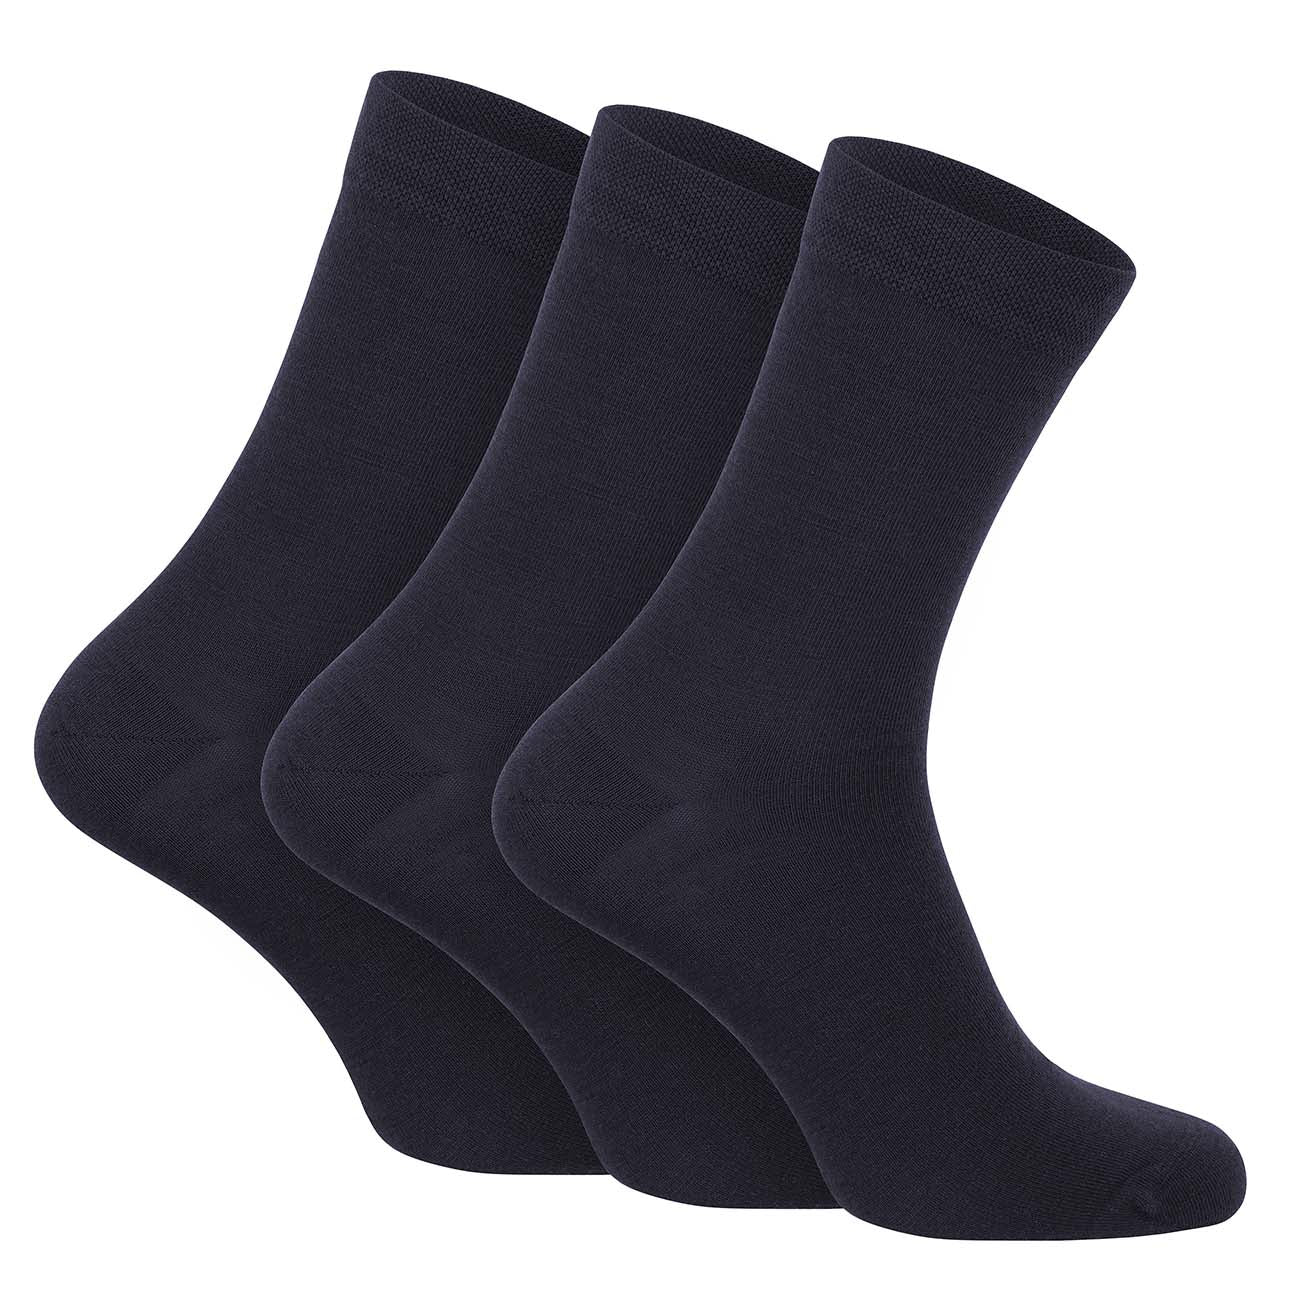 Chaussettes de travail d'hiver MERINOS - Noir/Gris 39-42